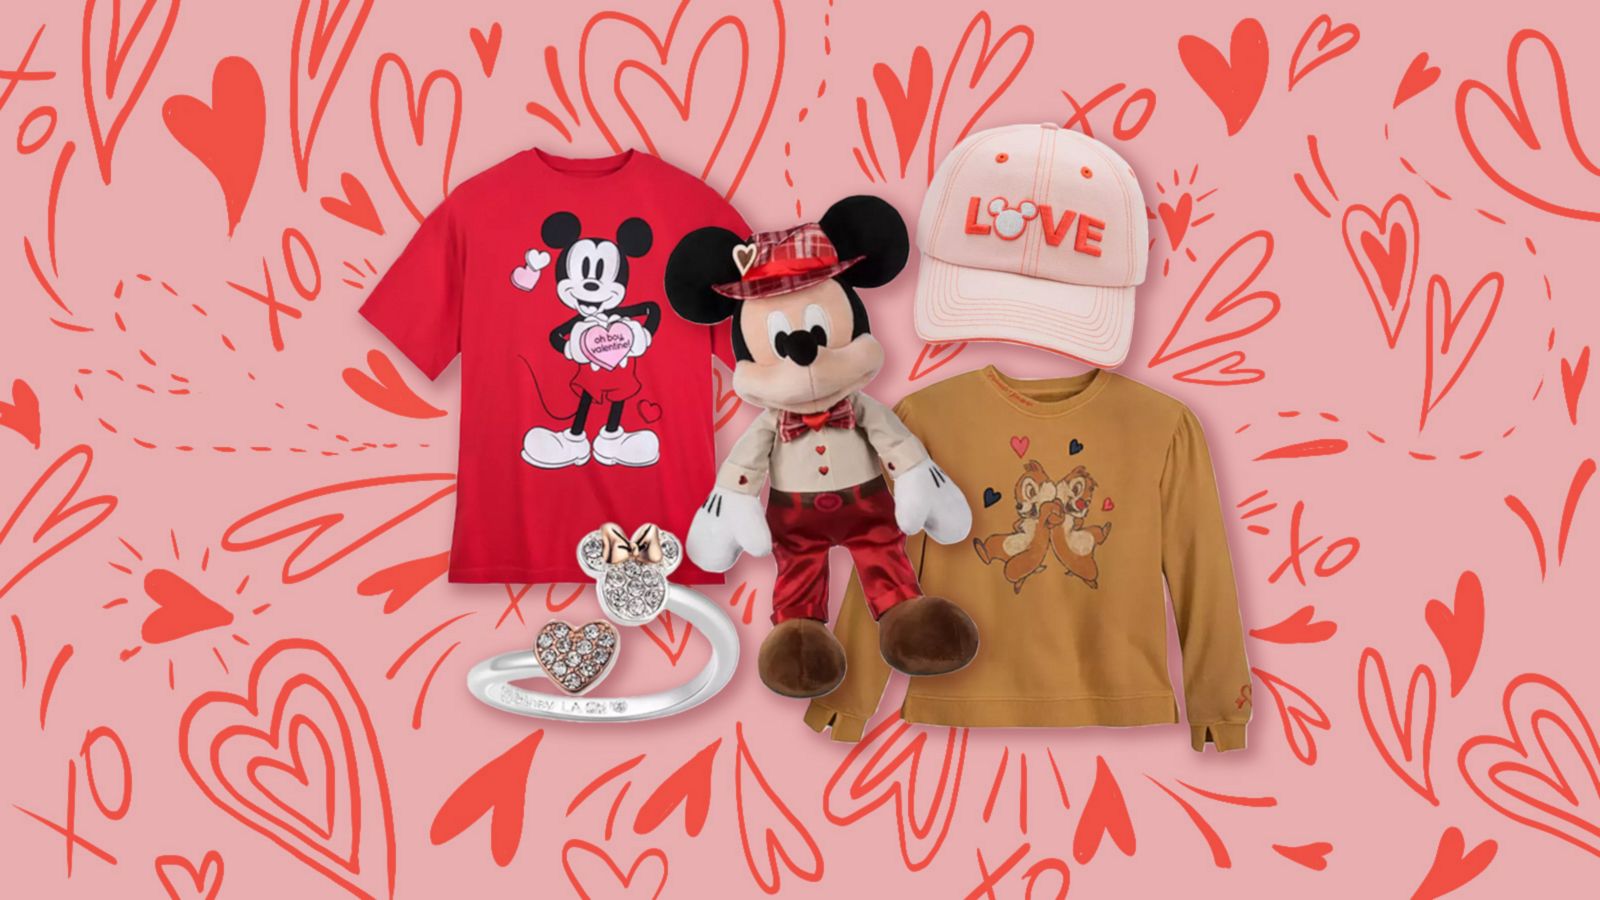 Dooney & Bourke Introduces New Disney Valentine's Pattern